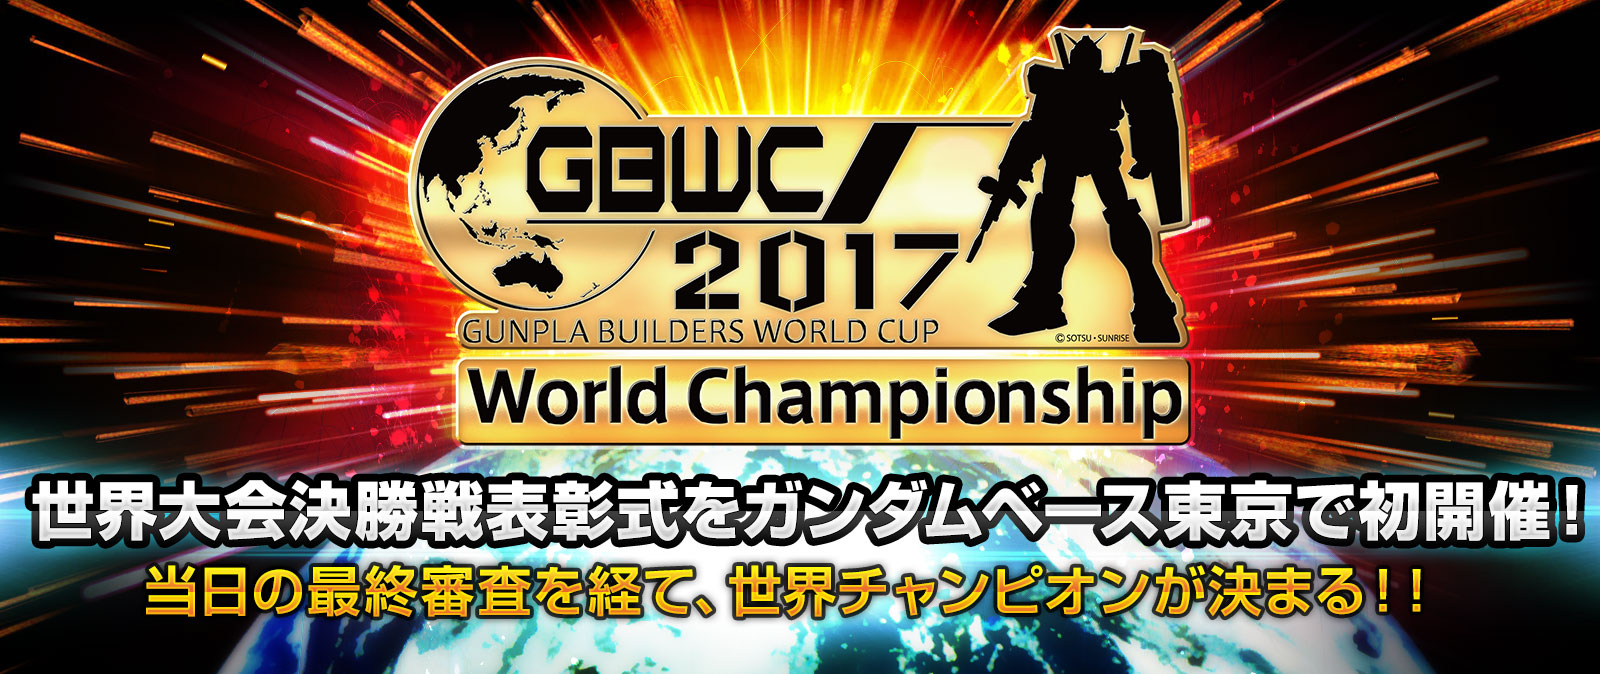 GBWC2017世界大会決勝戦表彰式